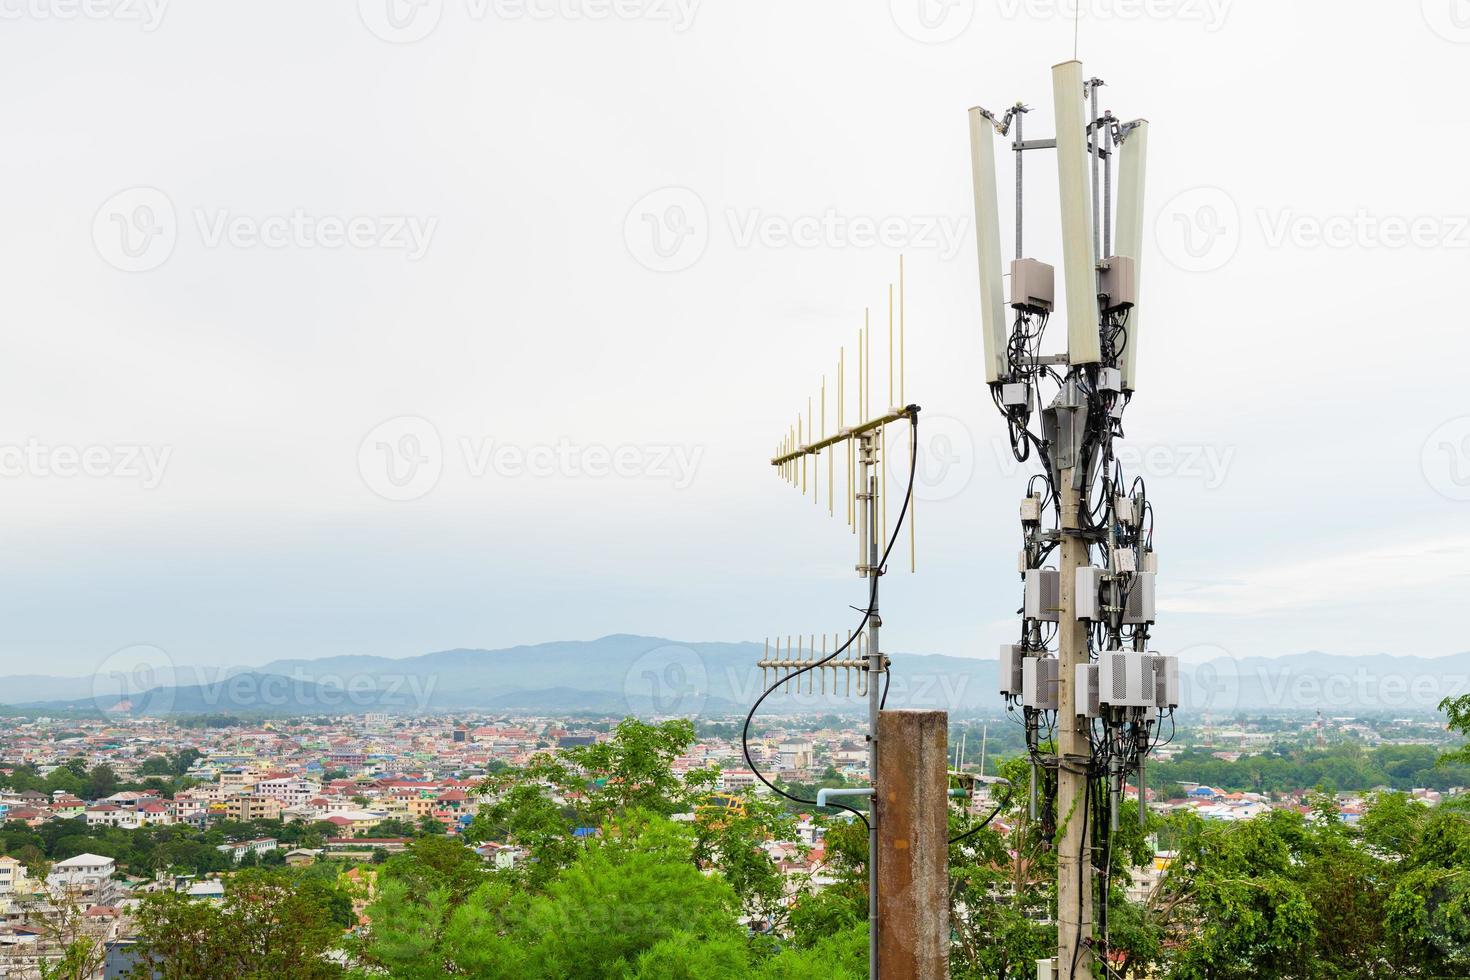 torre di telecomunicazioni con antenna di rete cellulare 5g su una città sullo sfondo della valle foto